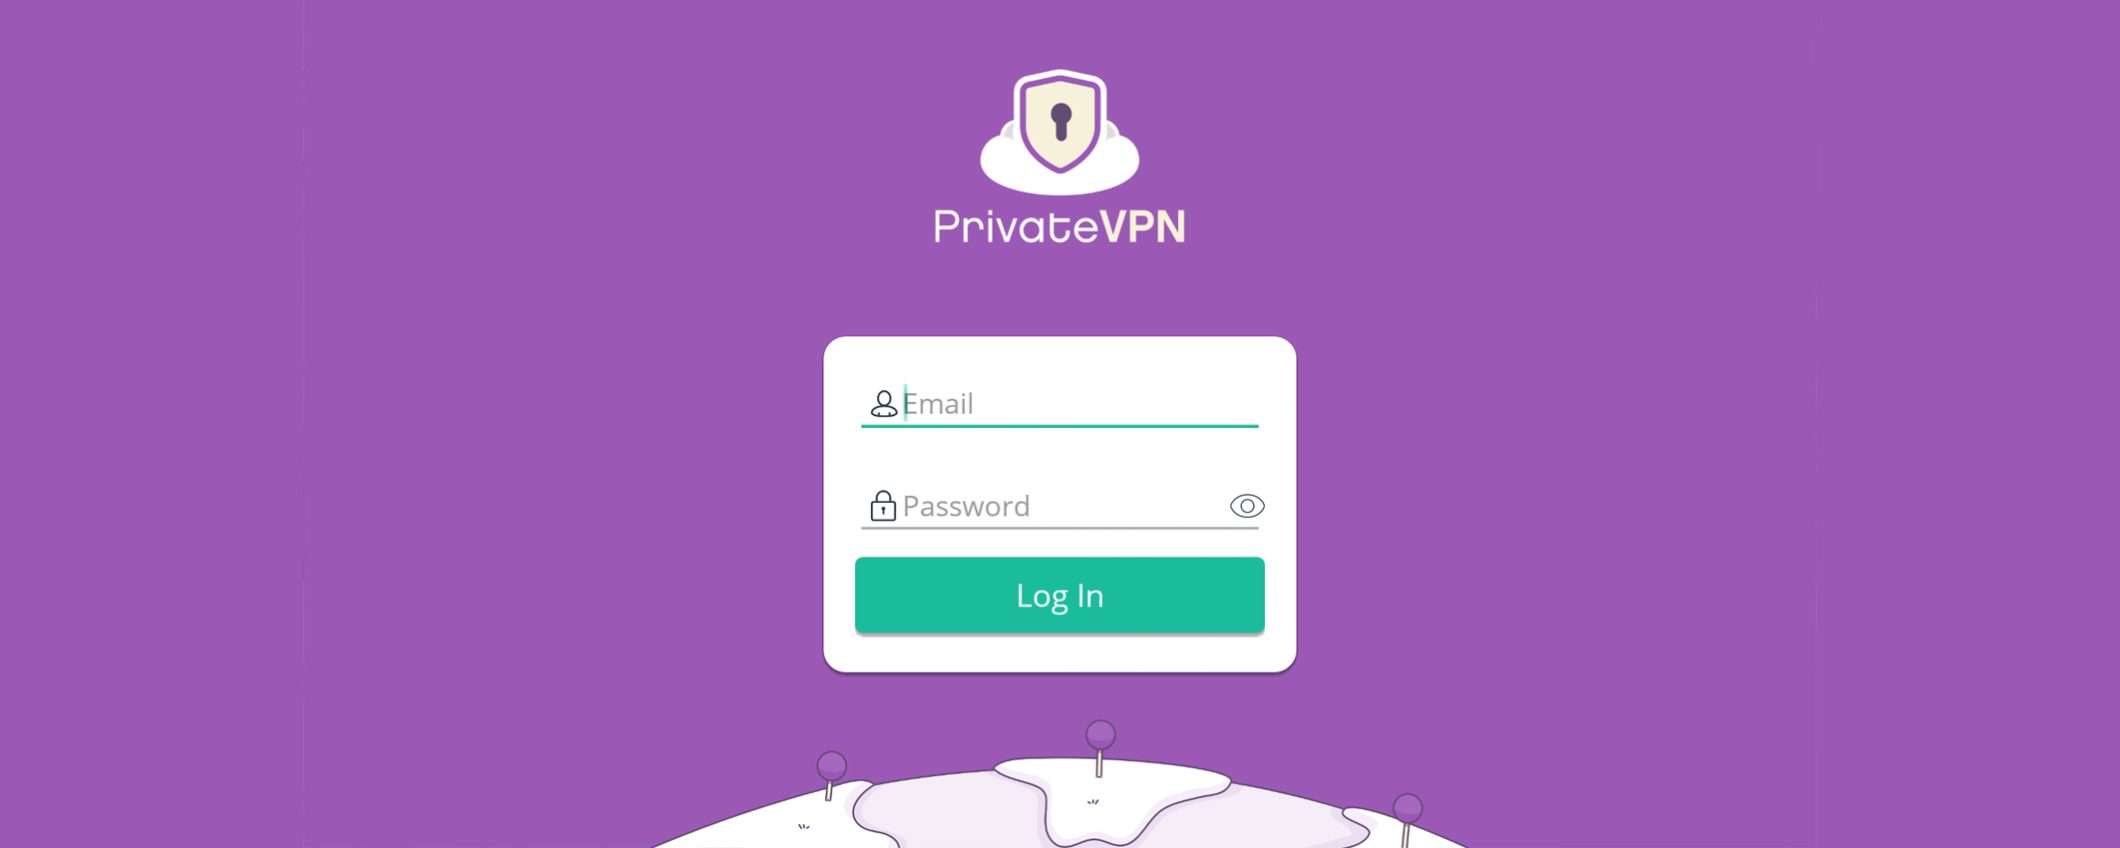 Passa al lato sicuro di Internet con PrivateVPN a soli 2€ al mese